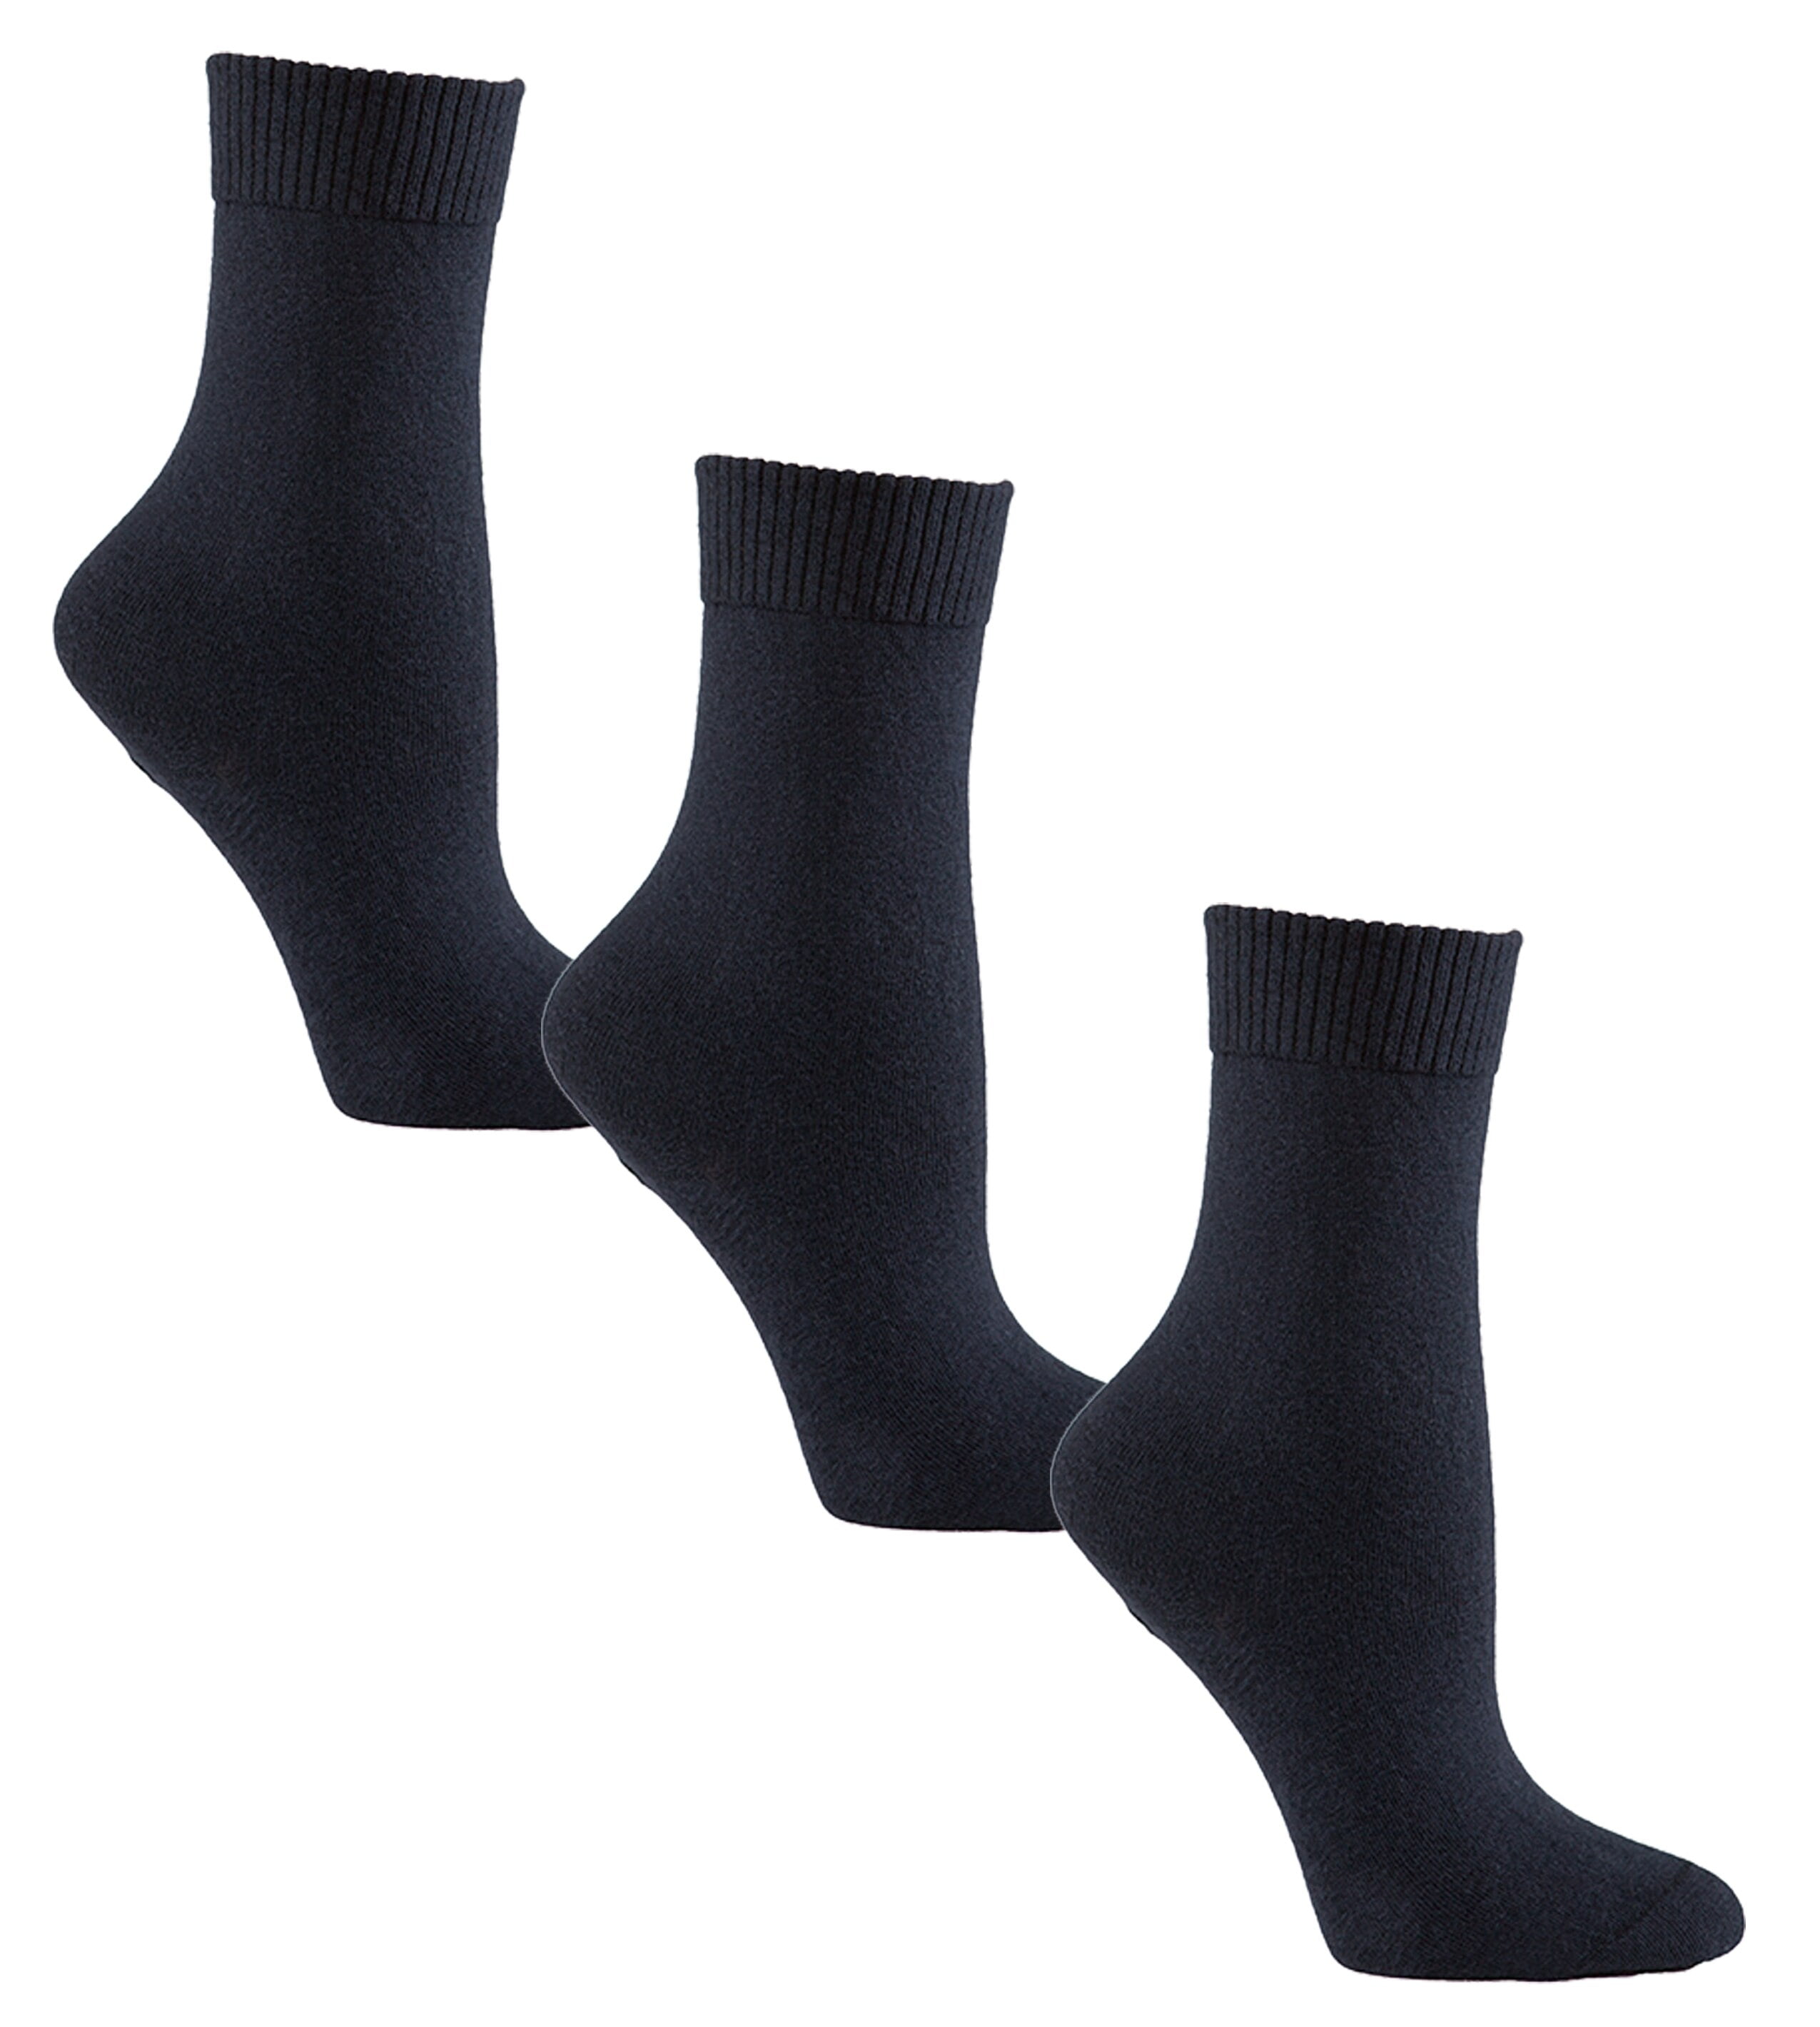 Sugar Free Sox - Womens Flat Knit Crew Diabetic Socks 3 Pack | Sock ...